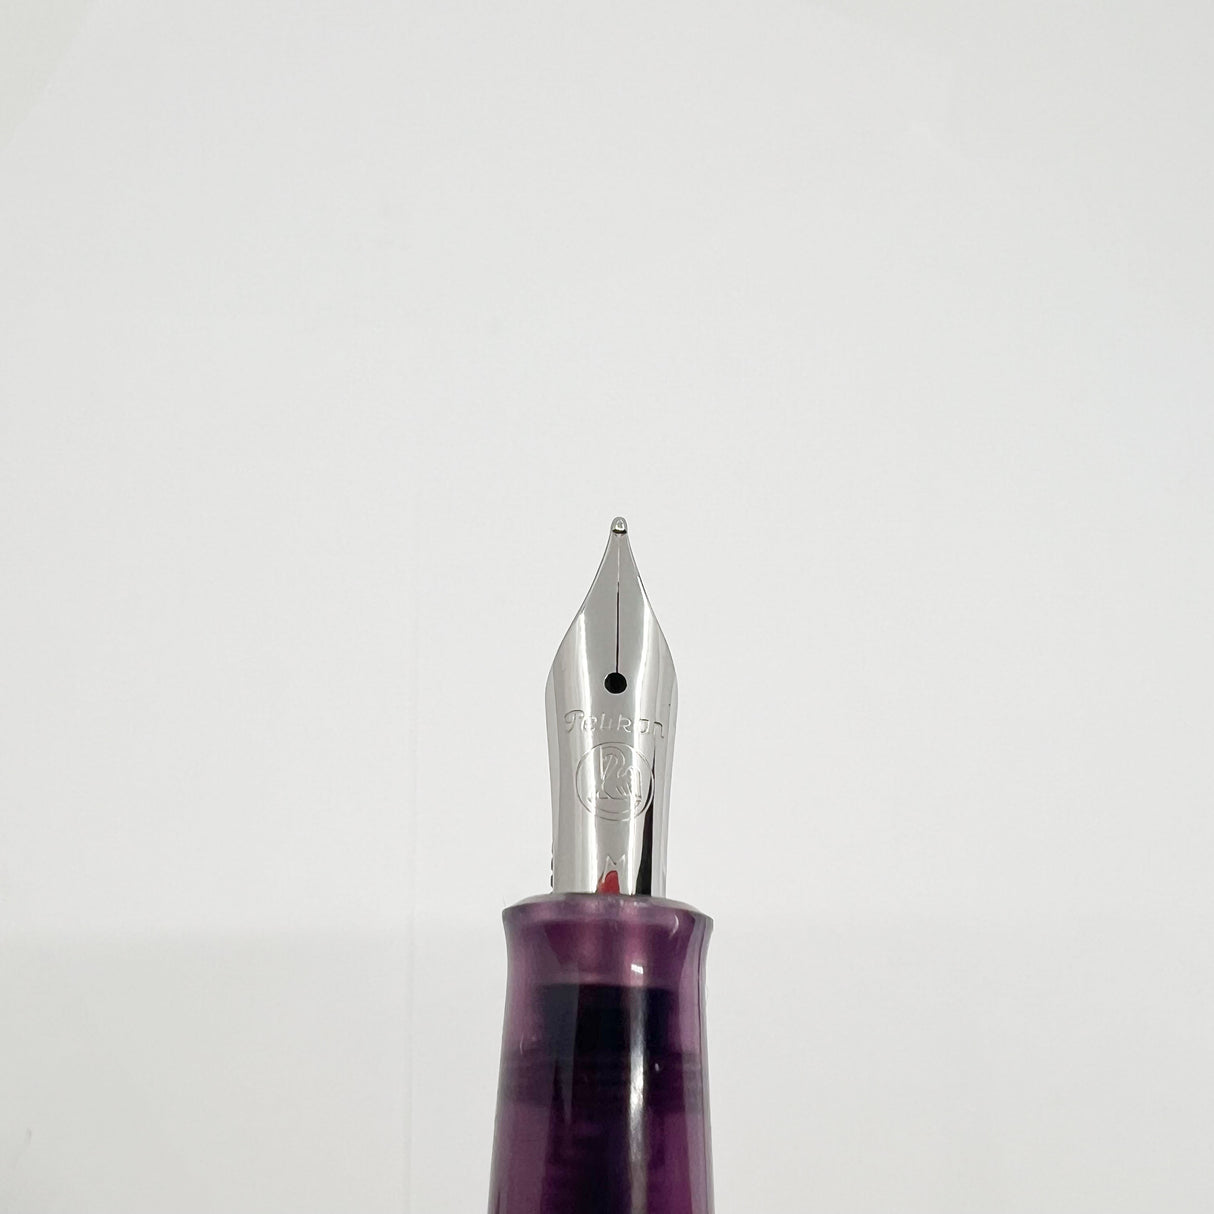 Pelikan M205 Amethyst Transparent Fountain Pen